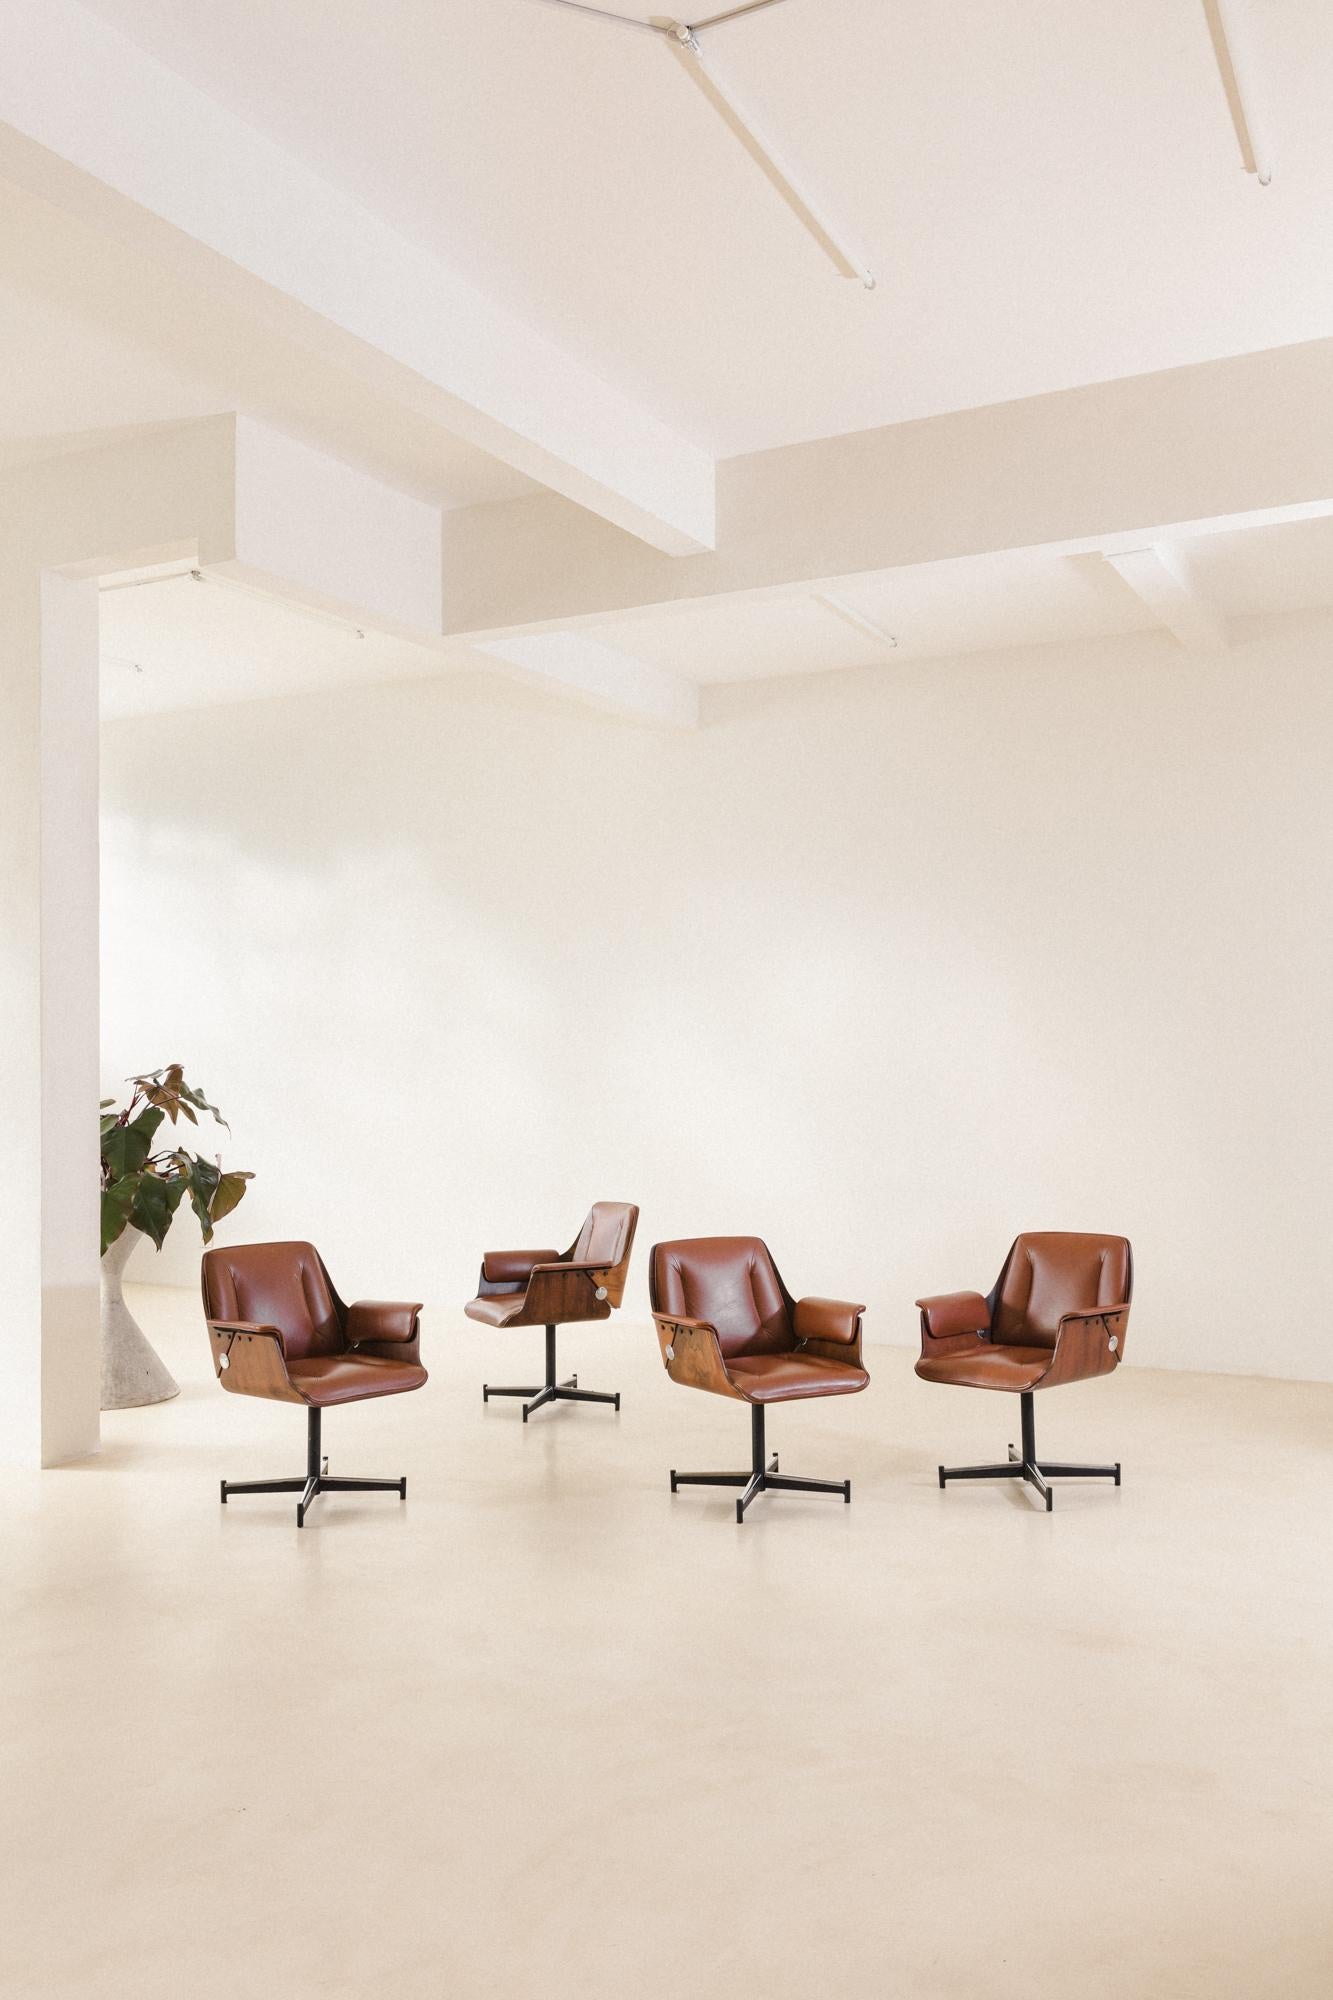 Einzelner Dinamarquesa-Stuhl, entworfen von dem in Italien geborenen Architekten Carlo Fongaro (1915-1986) und hergestellt von Probjeto, der in den 1970er Jahren eine der beliebtesten modernen brasilianischen Möbelserien entwarf. 

Die Struktur der